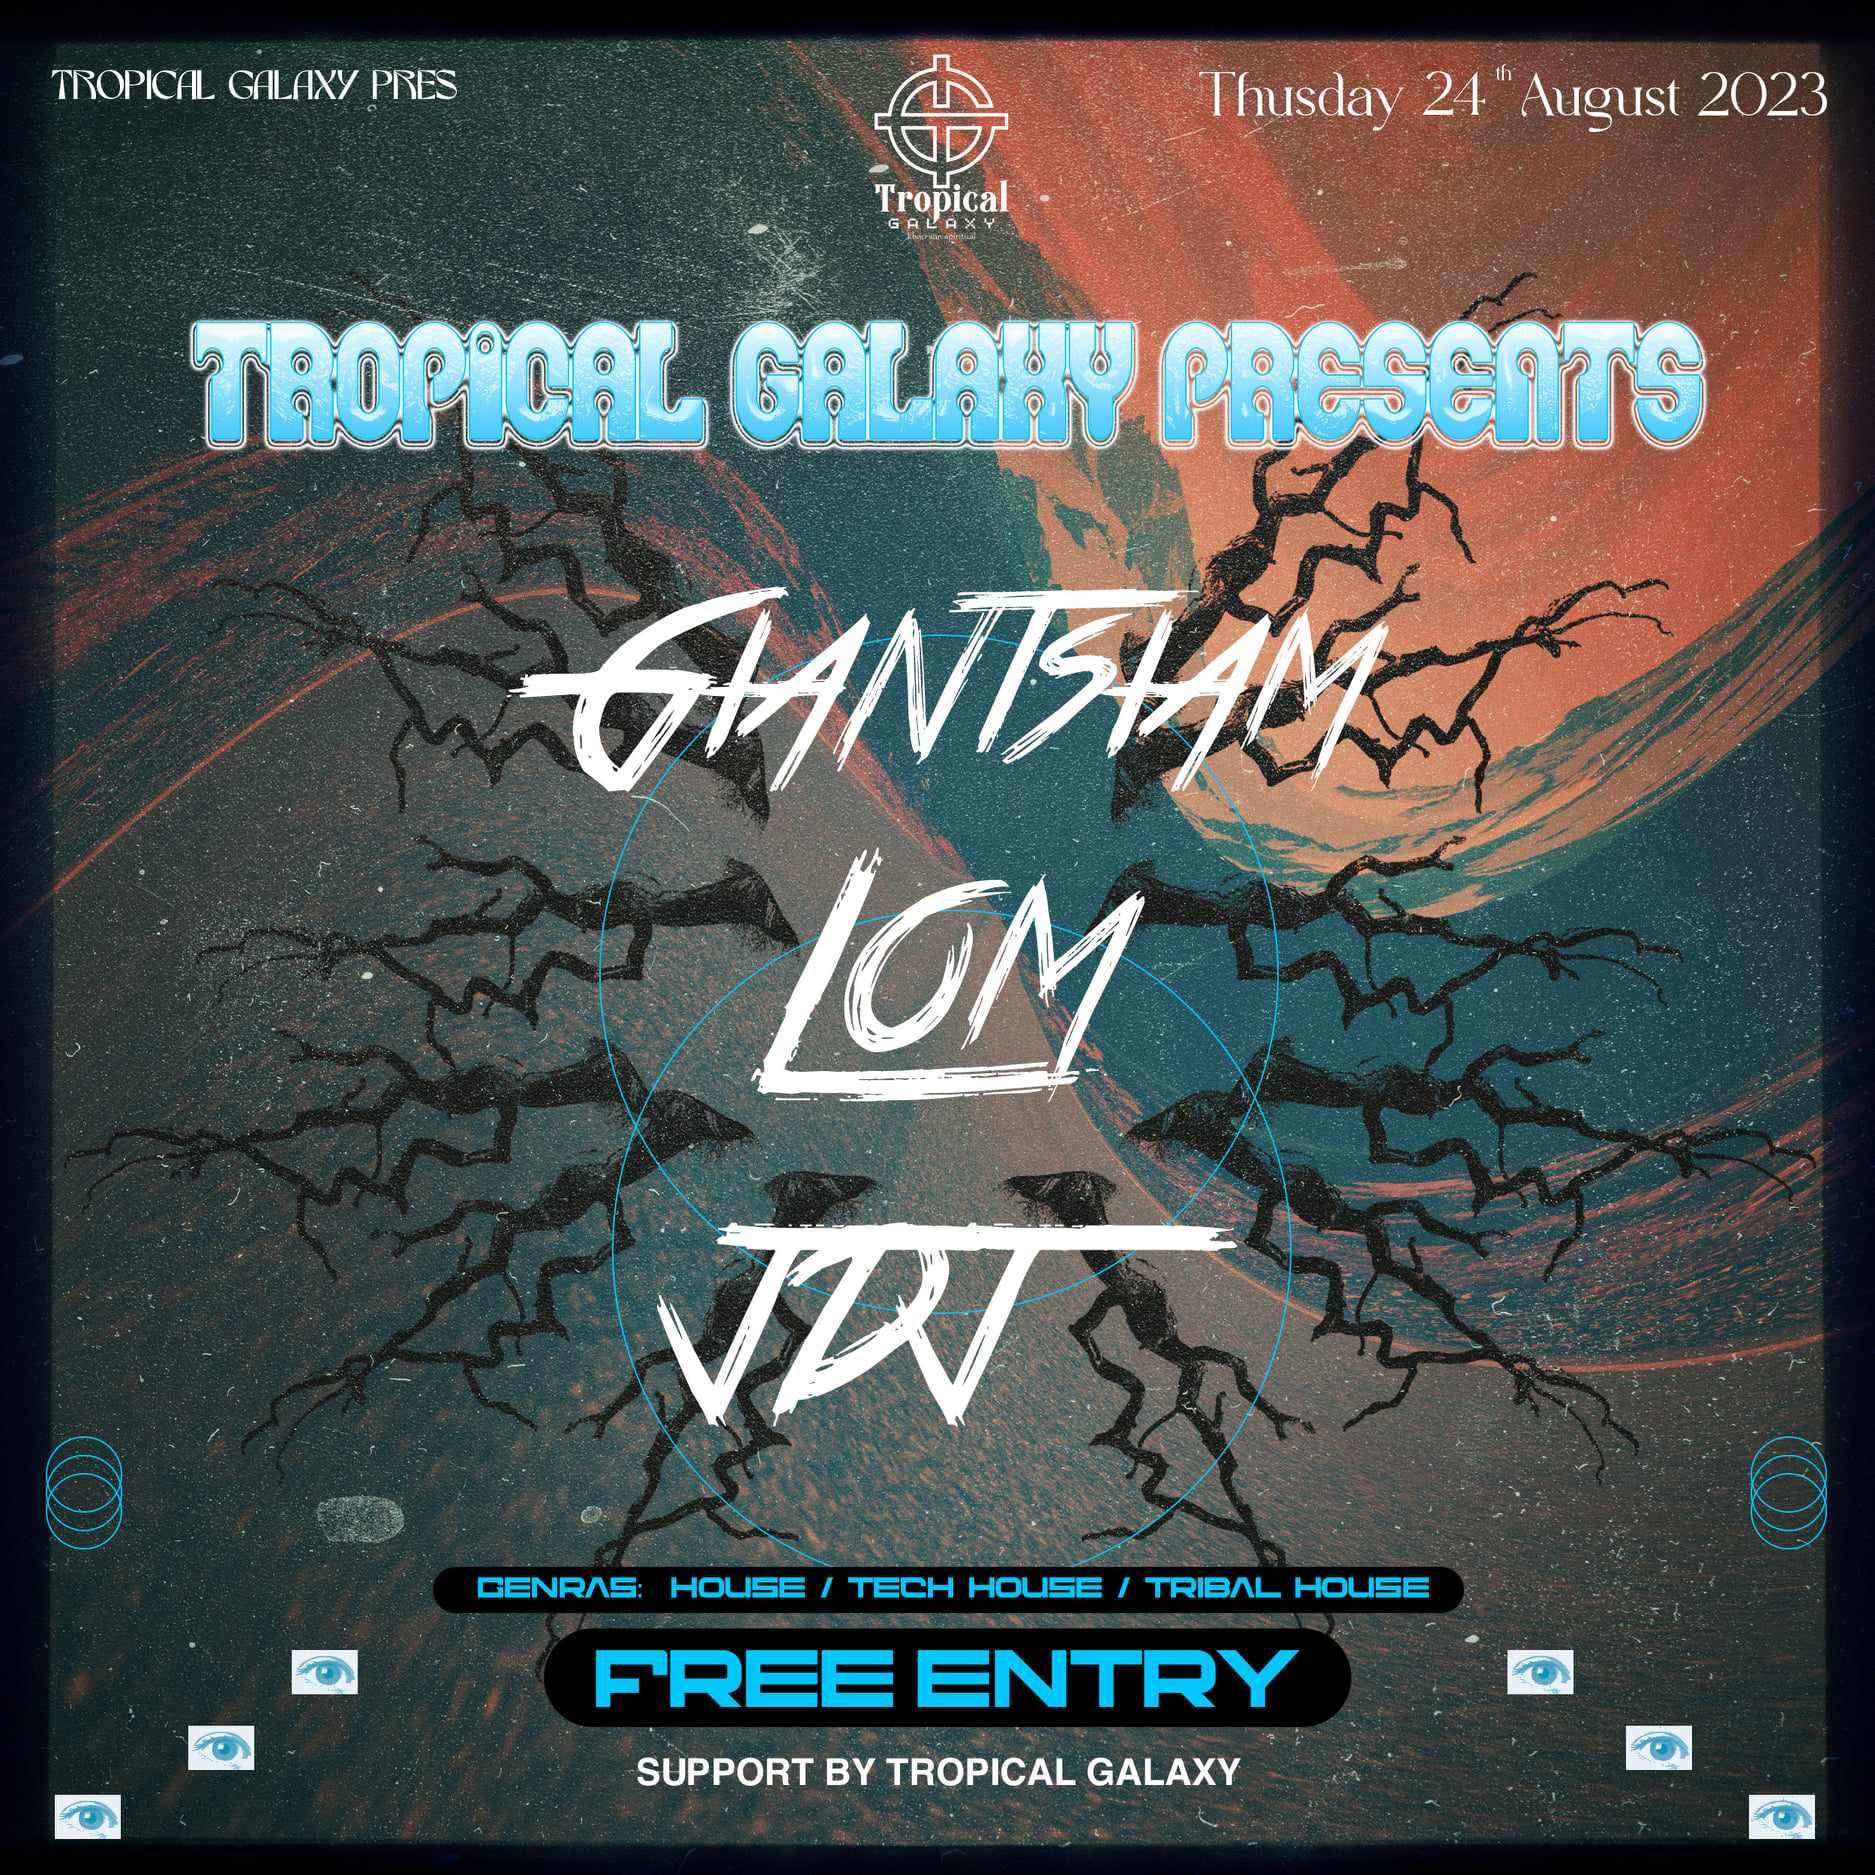 Tropical Galaxy presents. Giantsiam (TH). LOM TH). JDJ (TH) - Página frontal